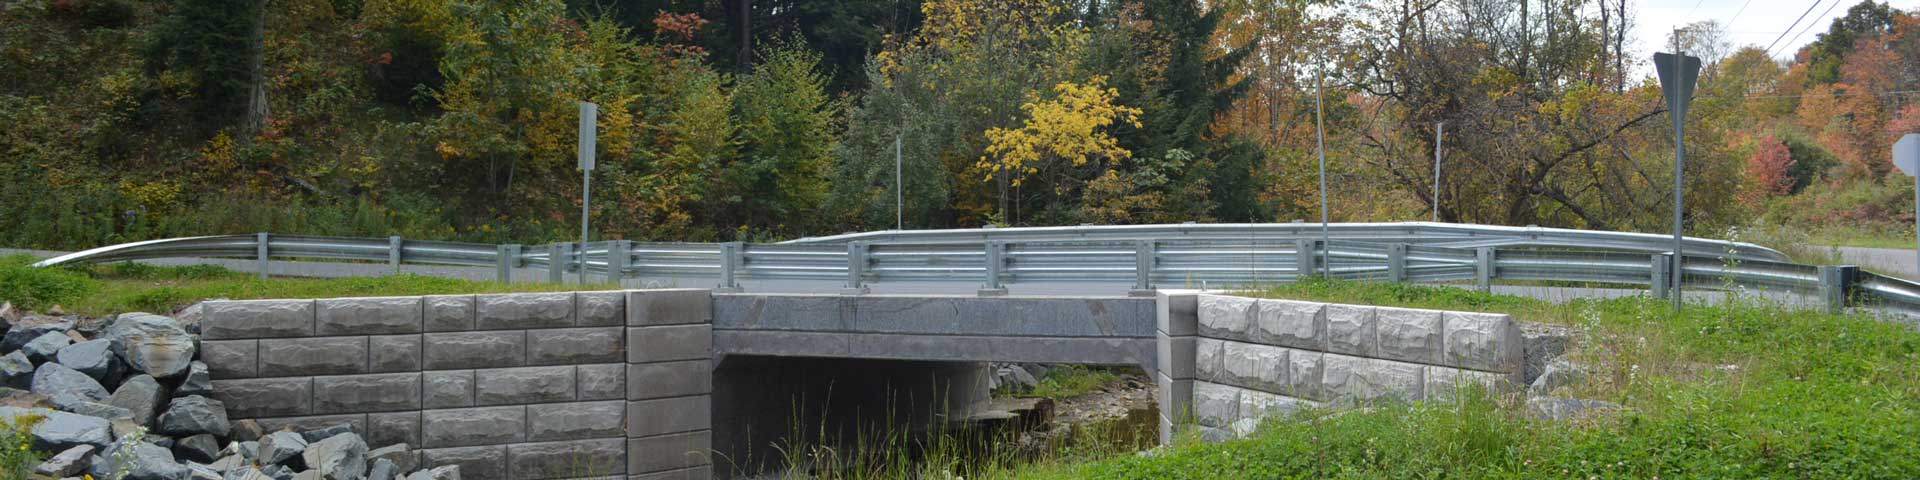  Wyok Road Bridge